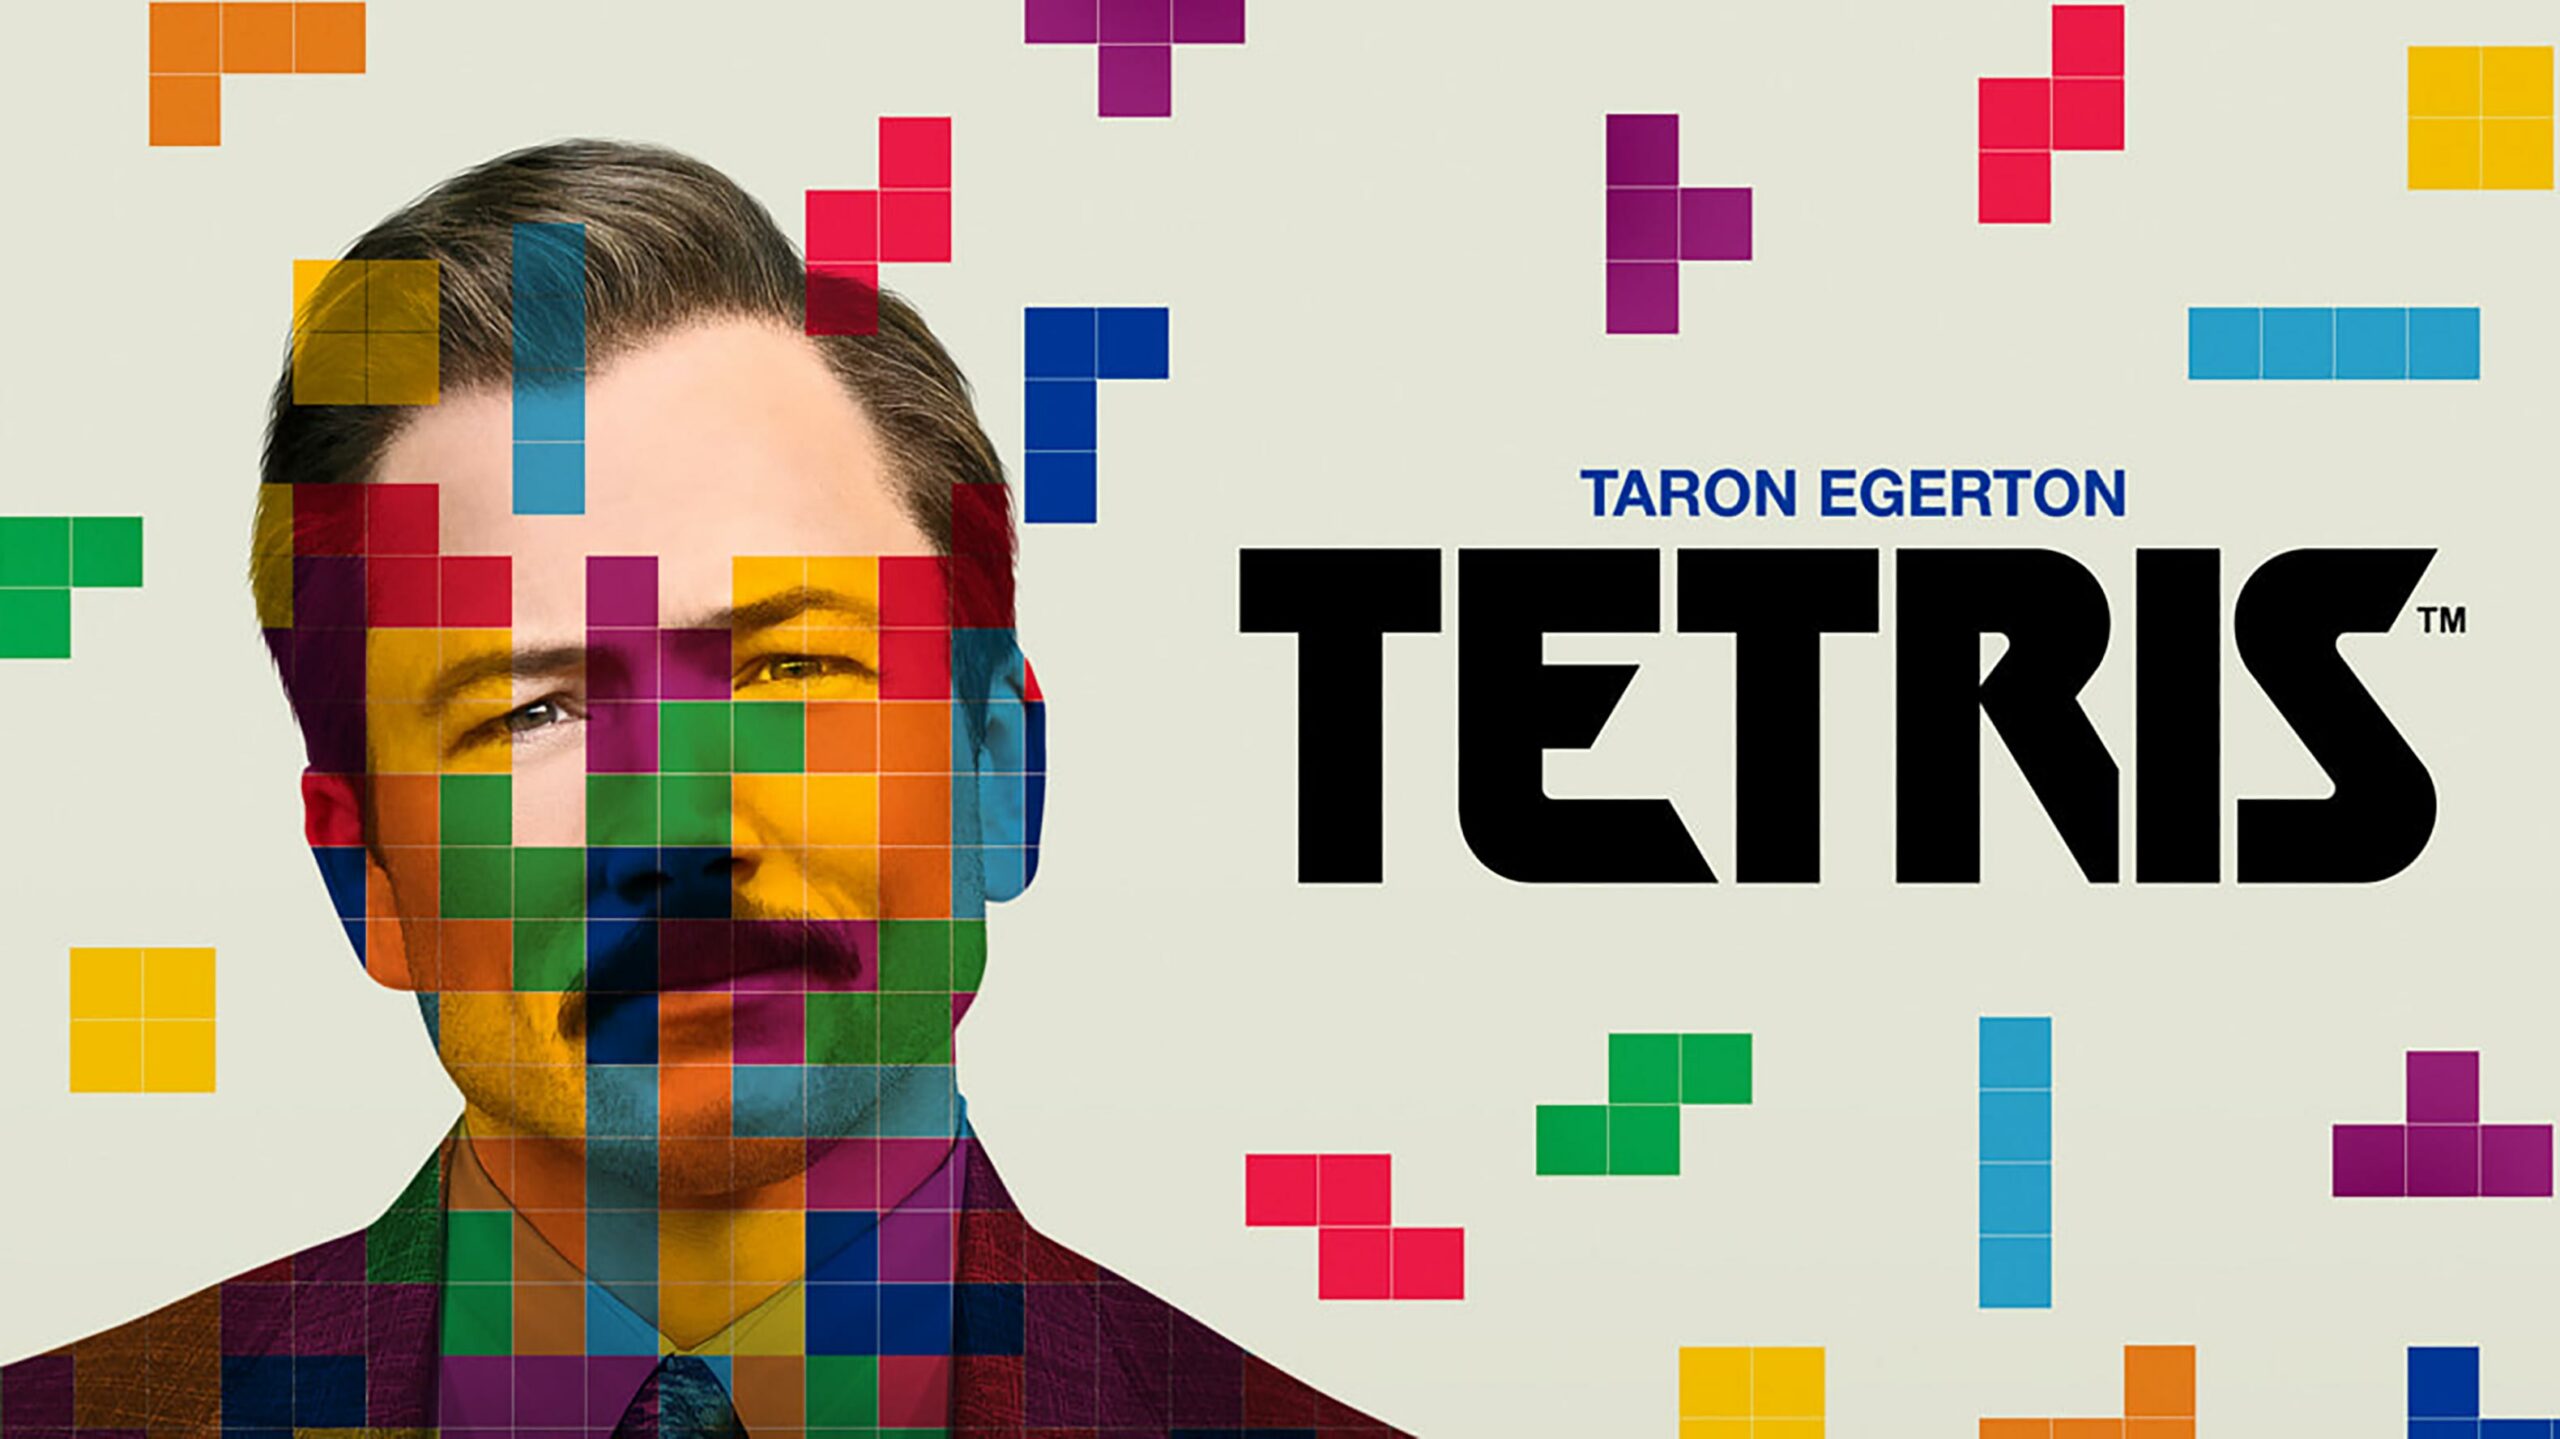 Tetris movie poster